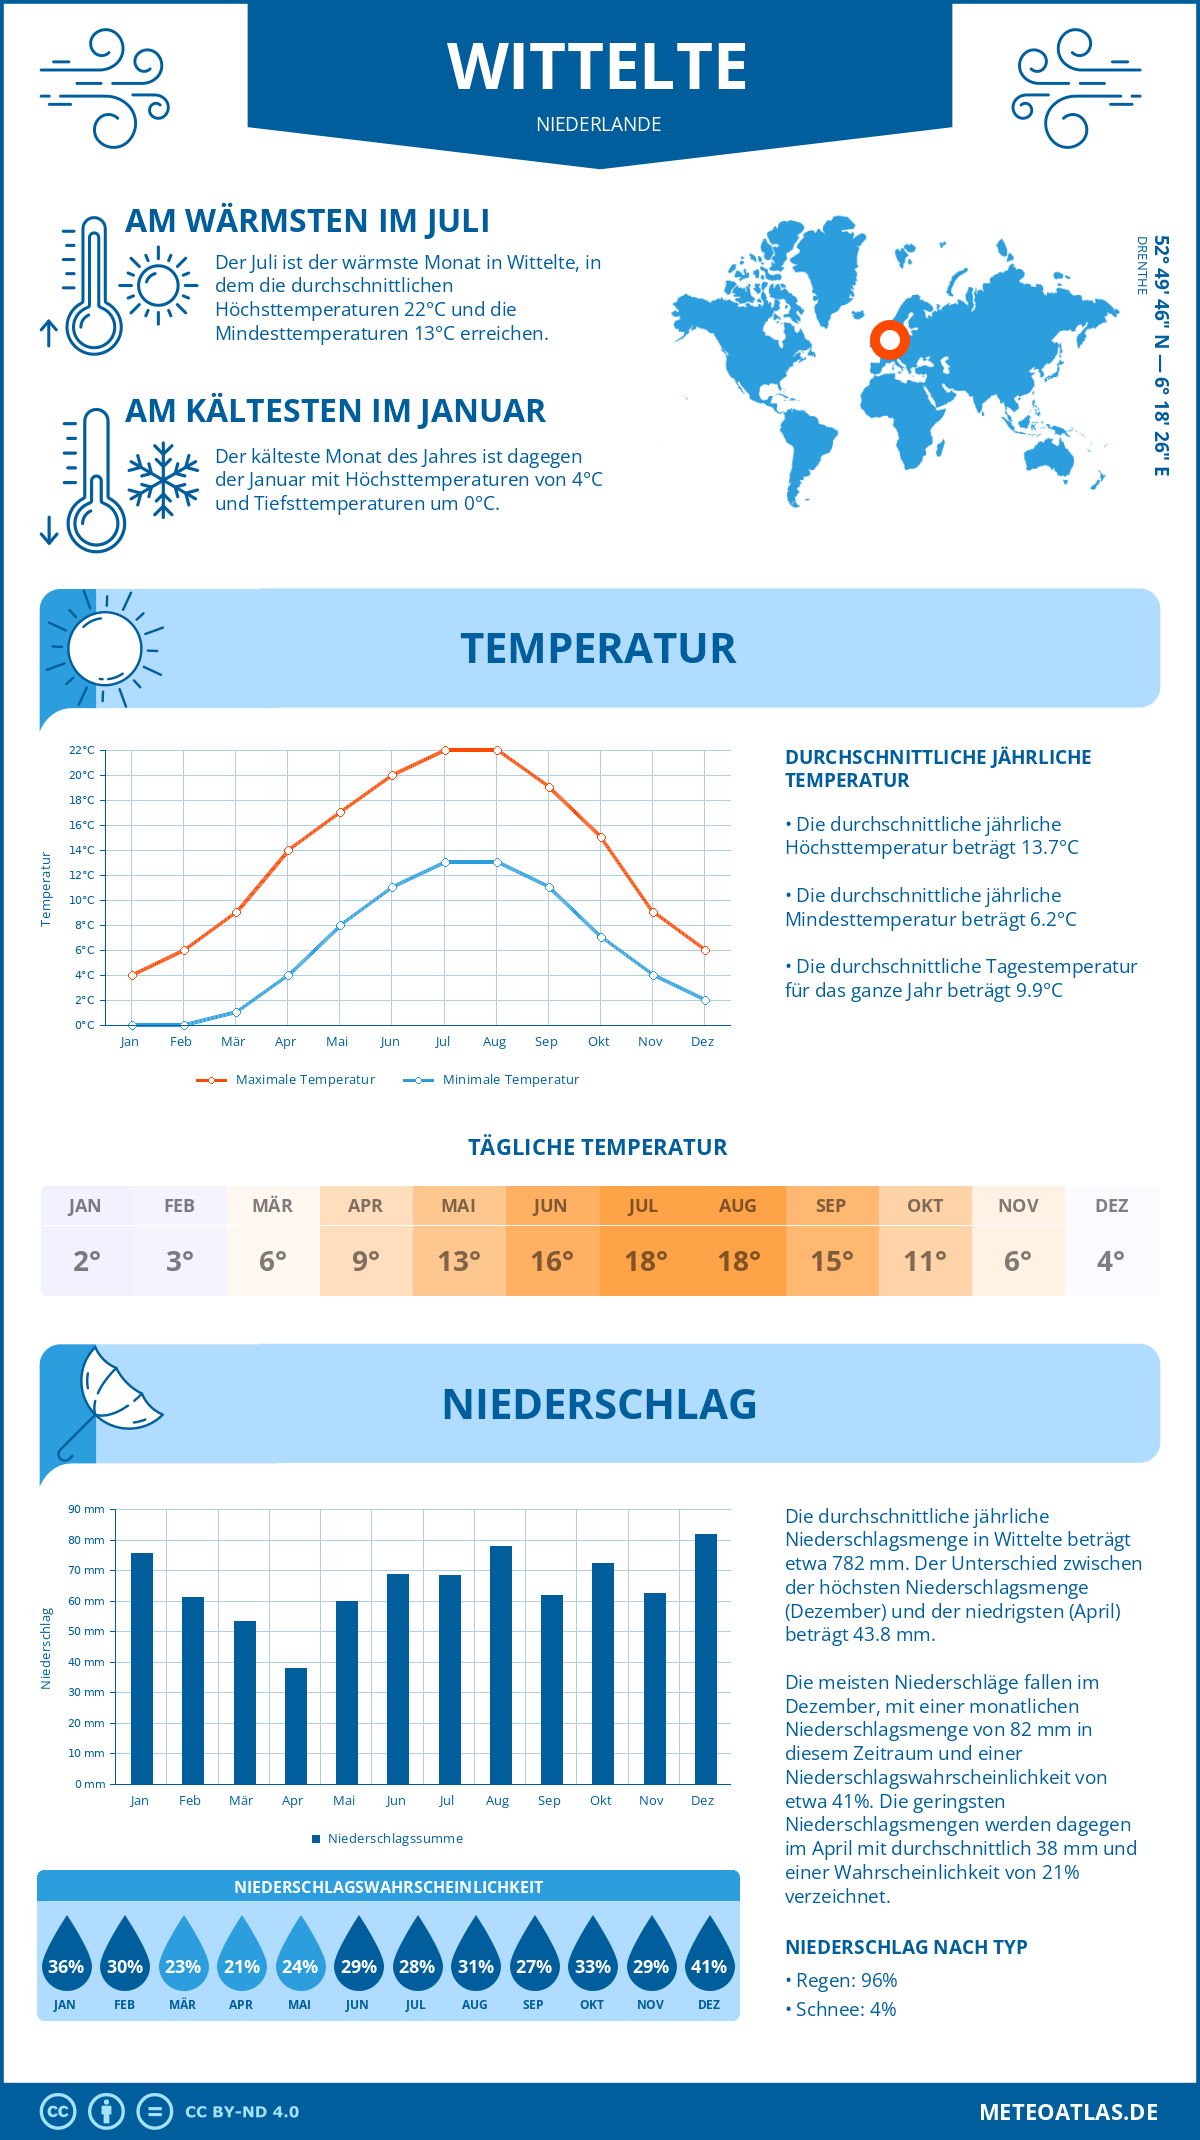 Wetter Wittelte (Niederlande) - Temperatur und Niederschlag